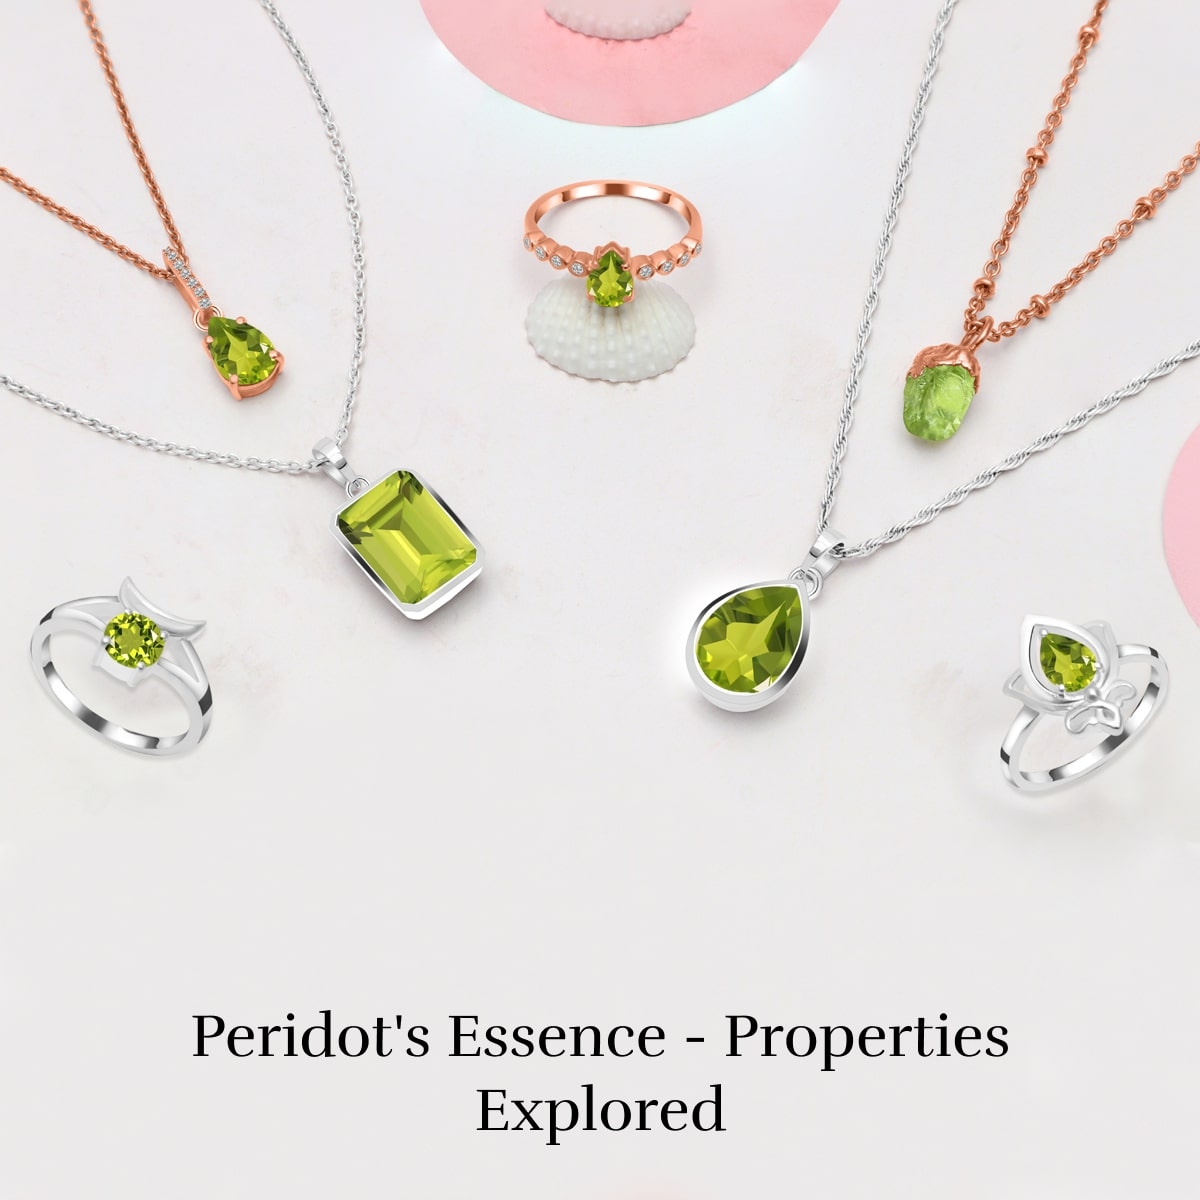 Properties of Peridot